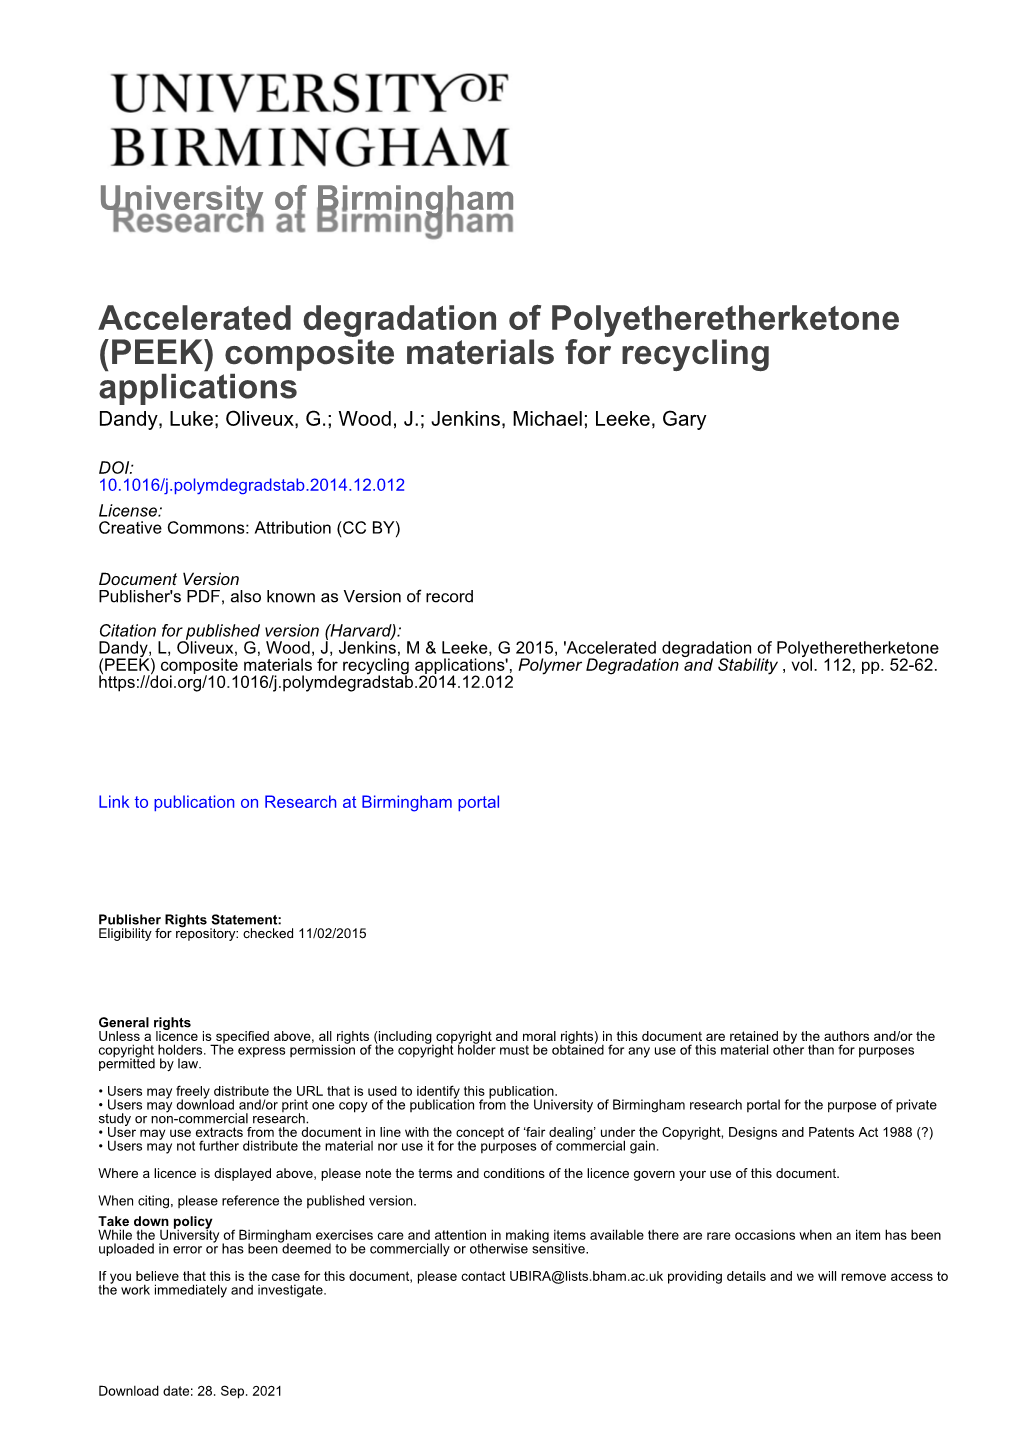 Accelerated Degradation of Polyetheretherketone (PEEK